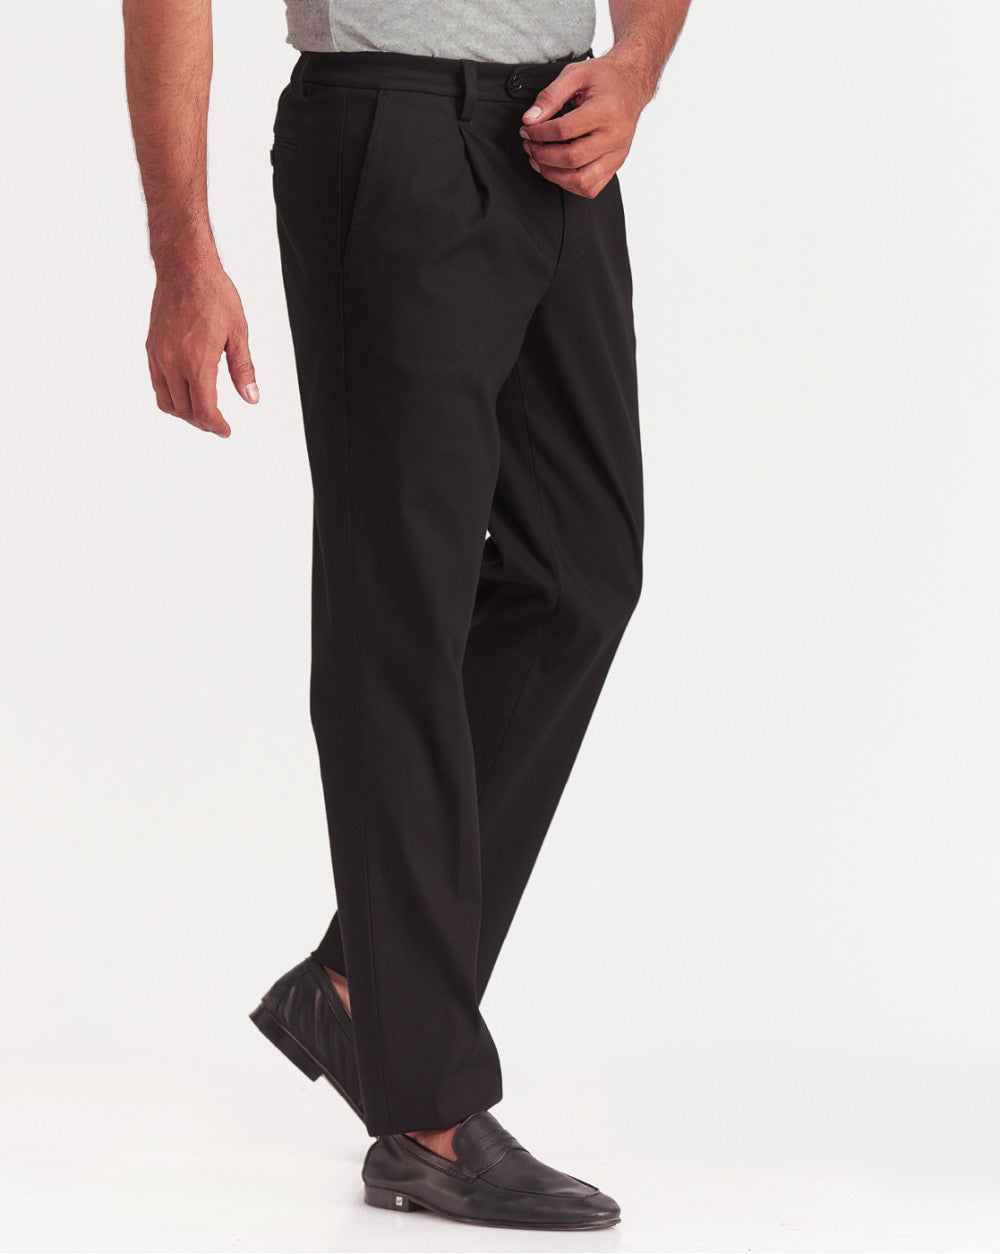 Buy Men Grey Regular Fit Solid Formal Trousers Online - 23323 | Allen Solly